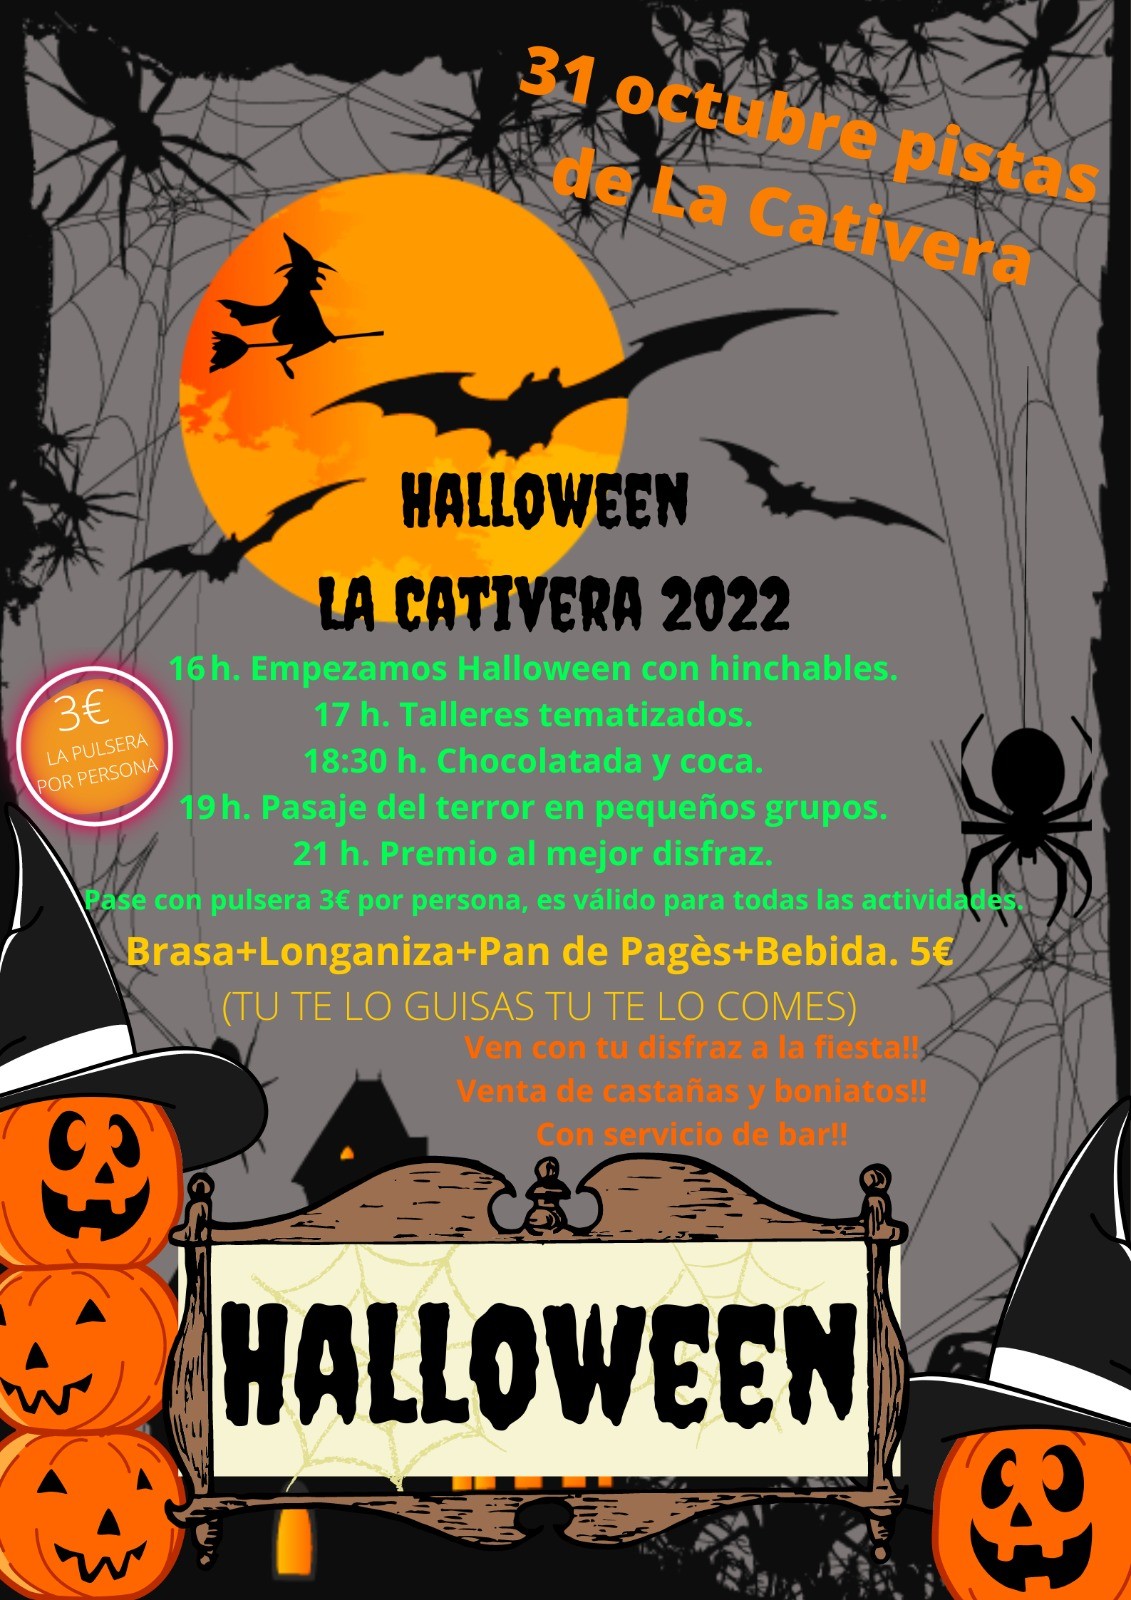 LA CATIVERA. 31 D’OCTUBRE 2022